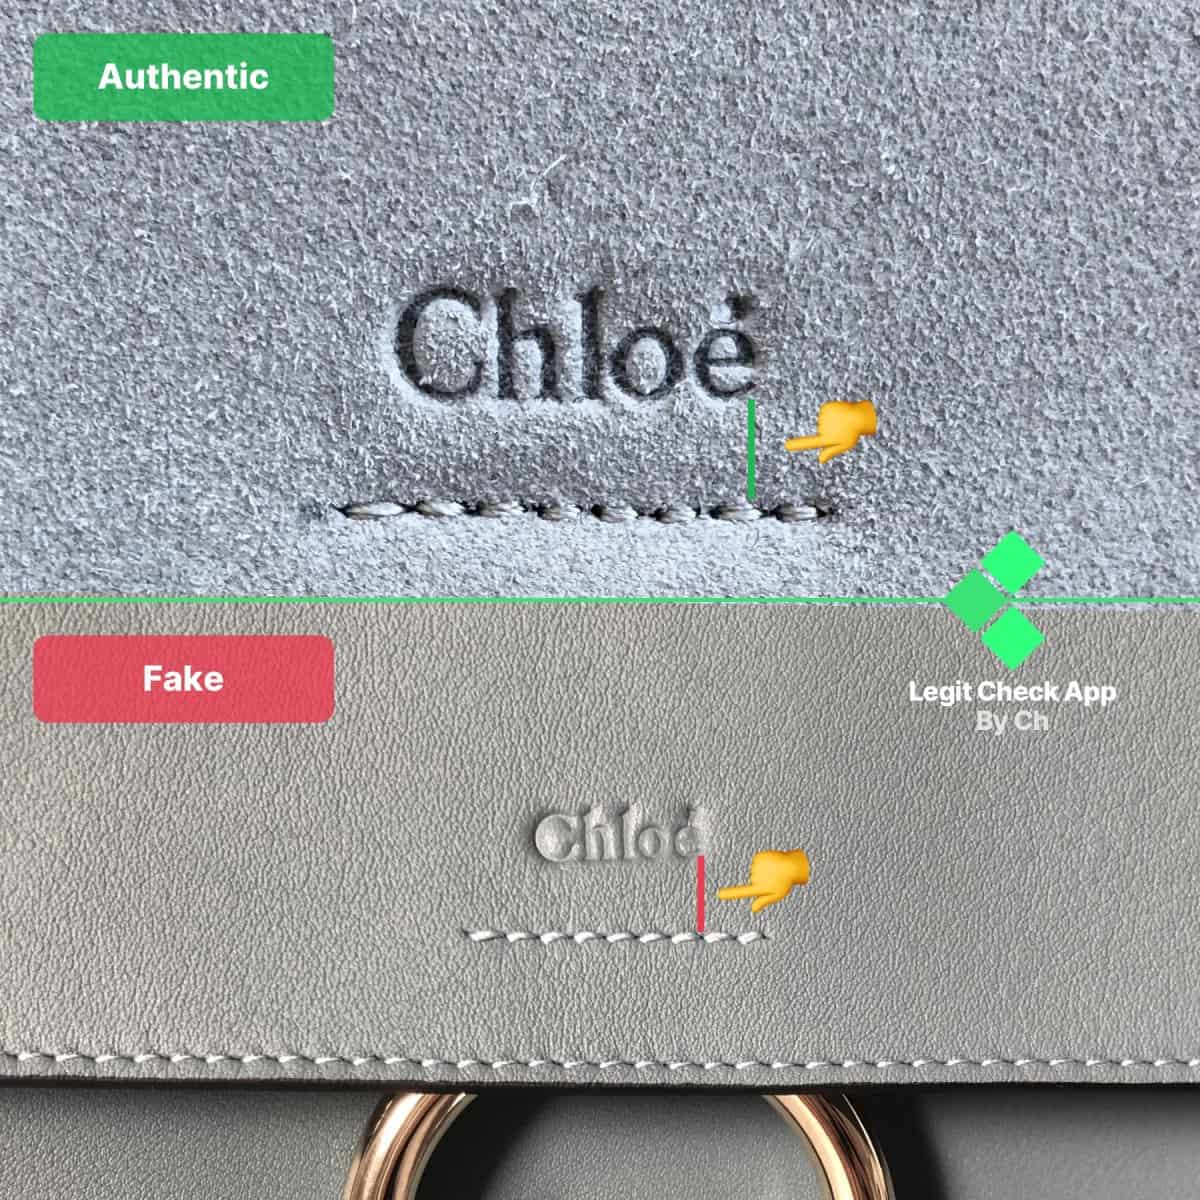 chloe faye small c authenticity check guide